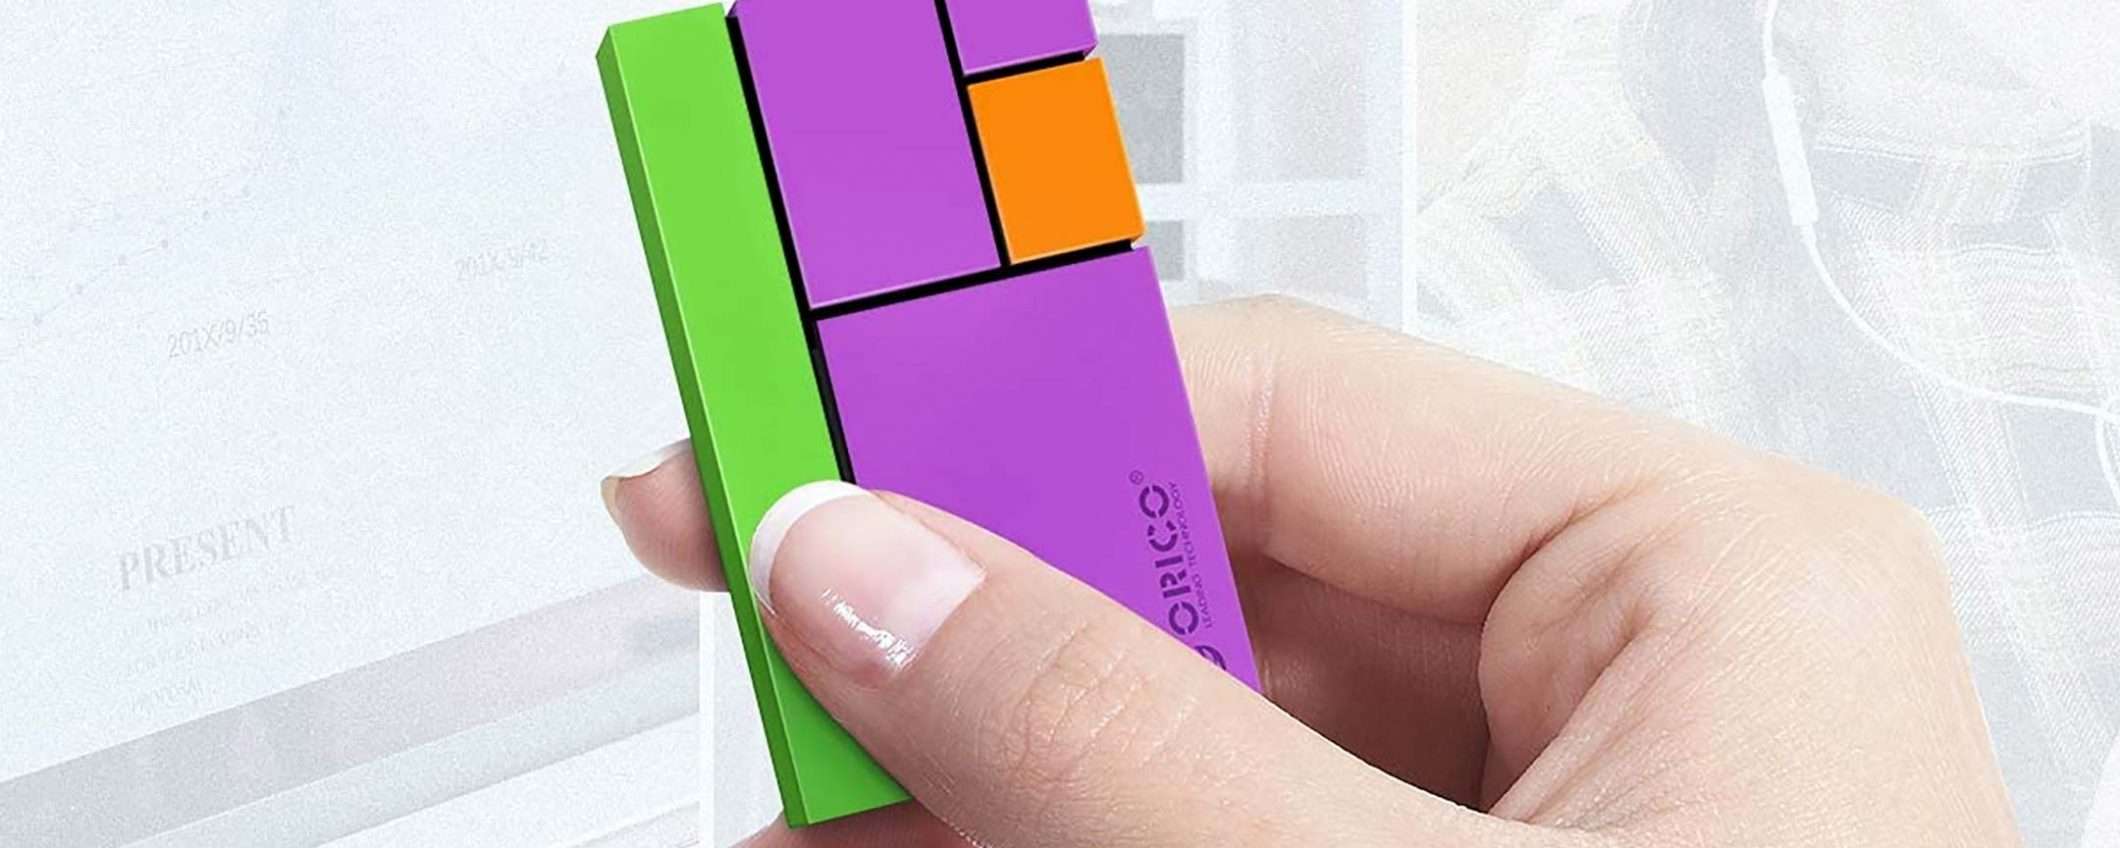 La SSD portatile che sembra Tetris (offerta Amazon)